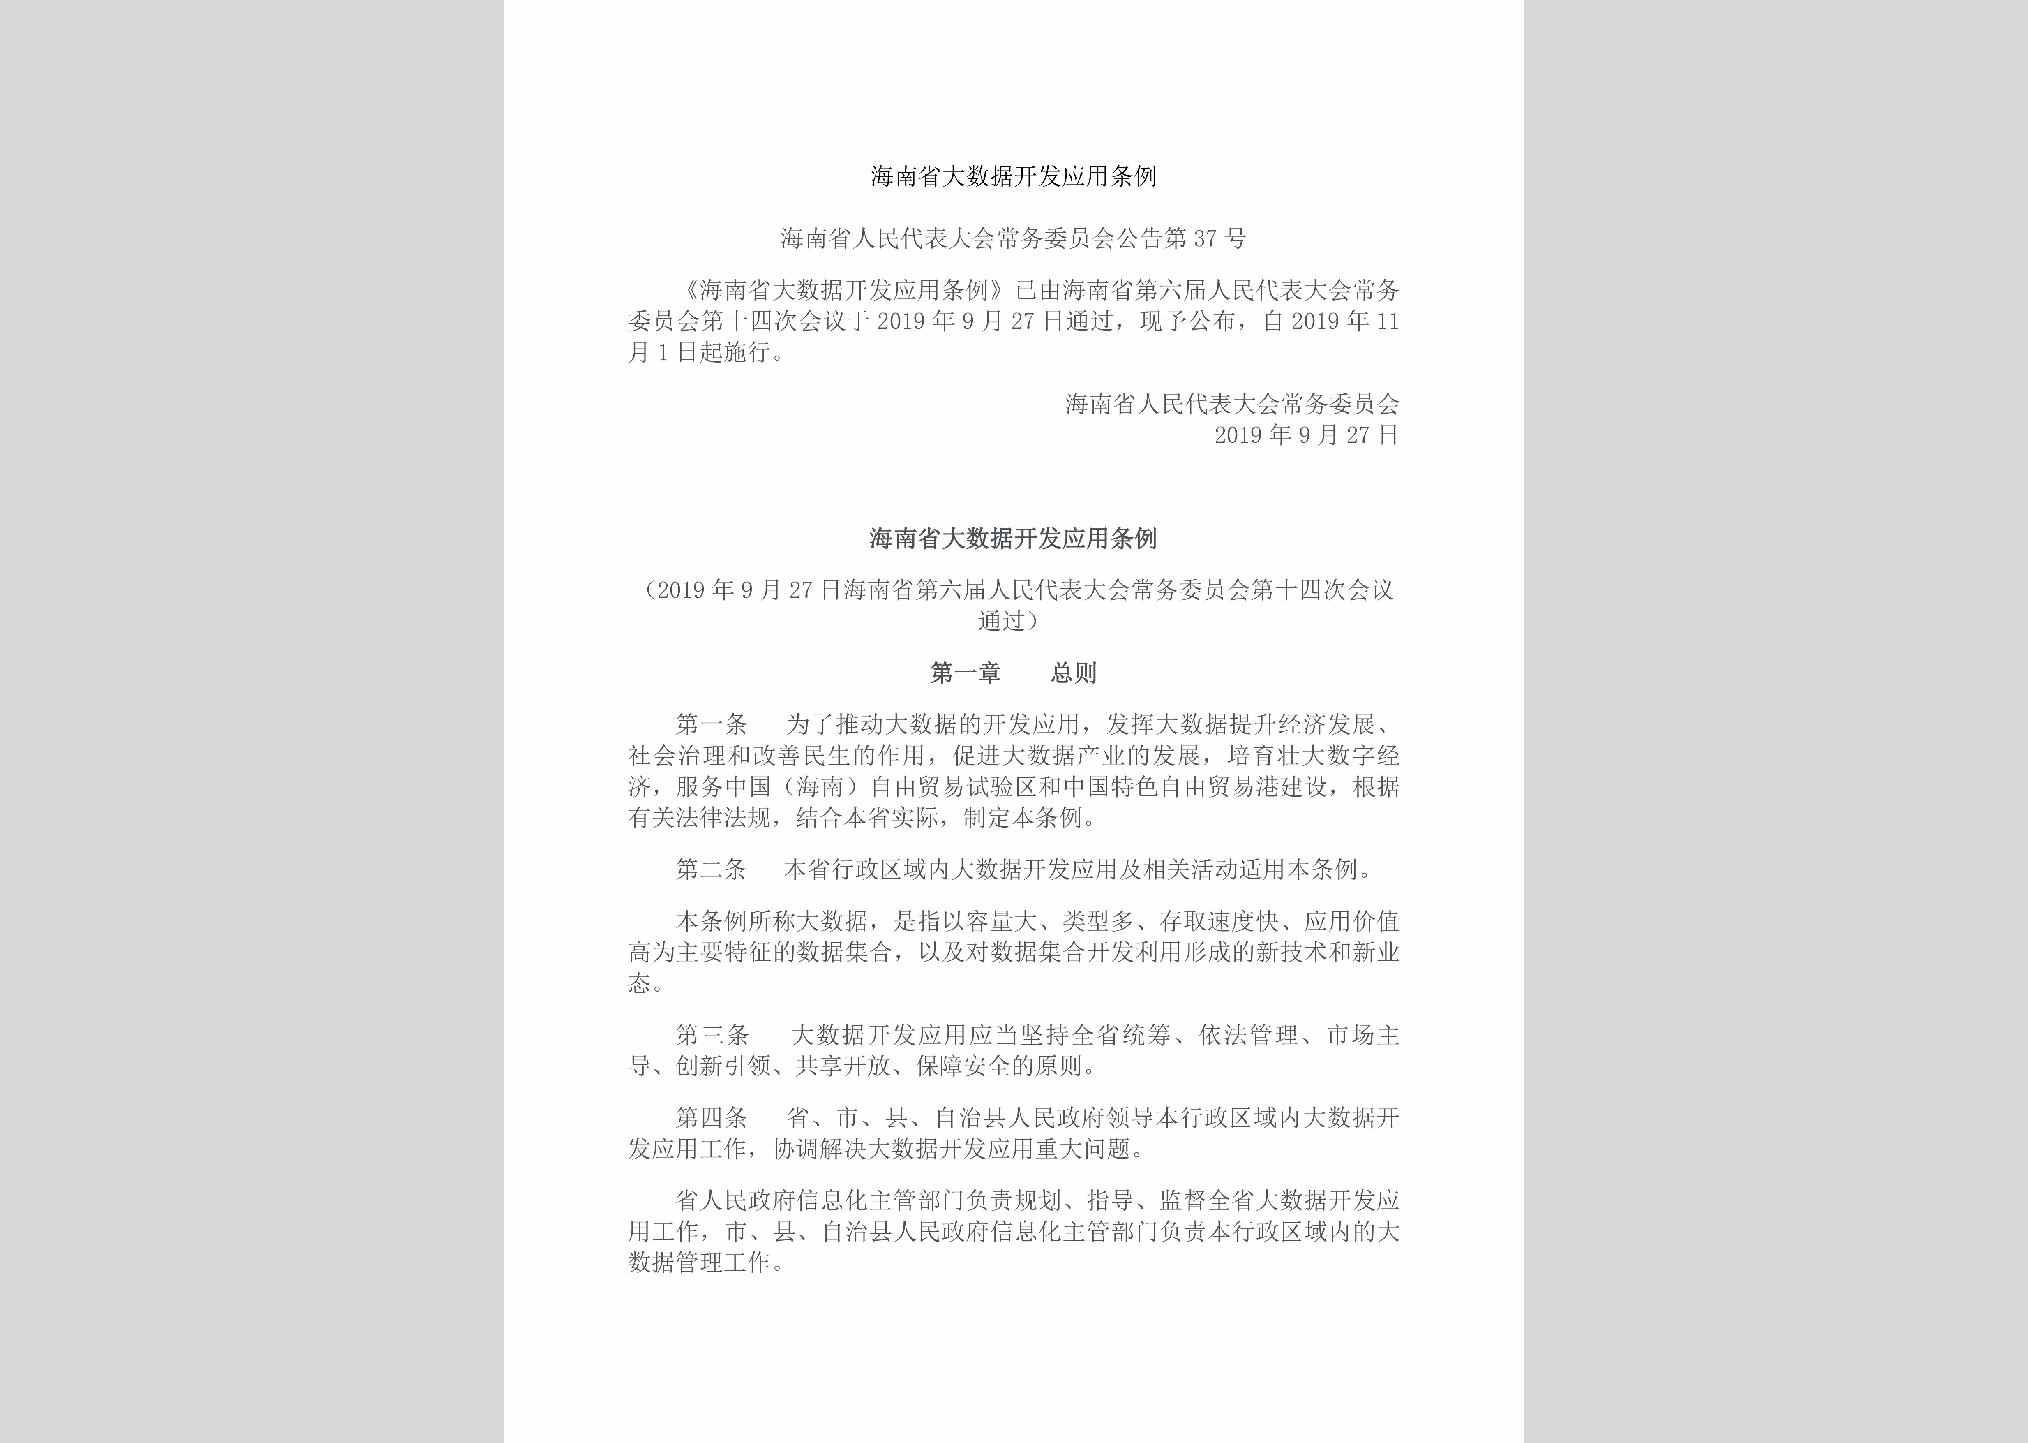 海南省人民代表大会常务委员会公告第37号：海南省大数据开发应用条例